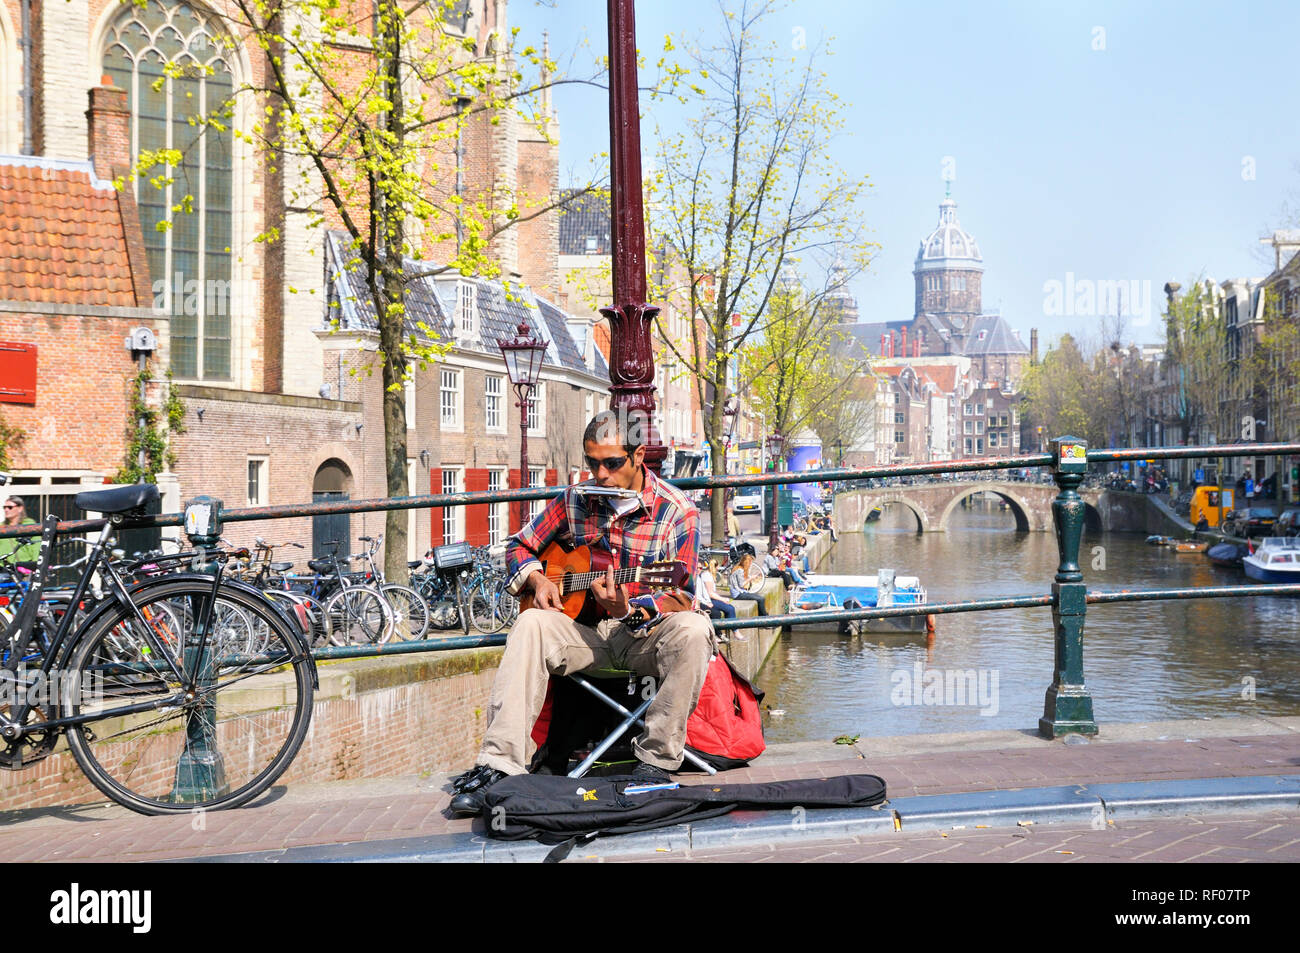 Busker a suonare la chitarra e armonica in una calda giornata di primavera nel quartiere a luci rosse di Amsterdam, Olanda Settentrionale, Paesi Bassi Foto Stock